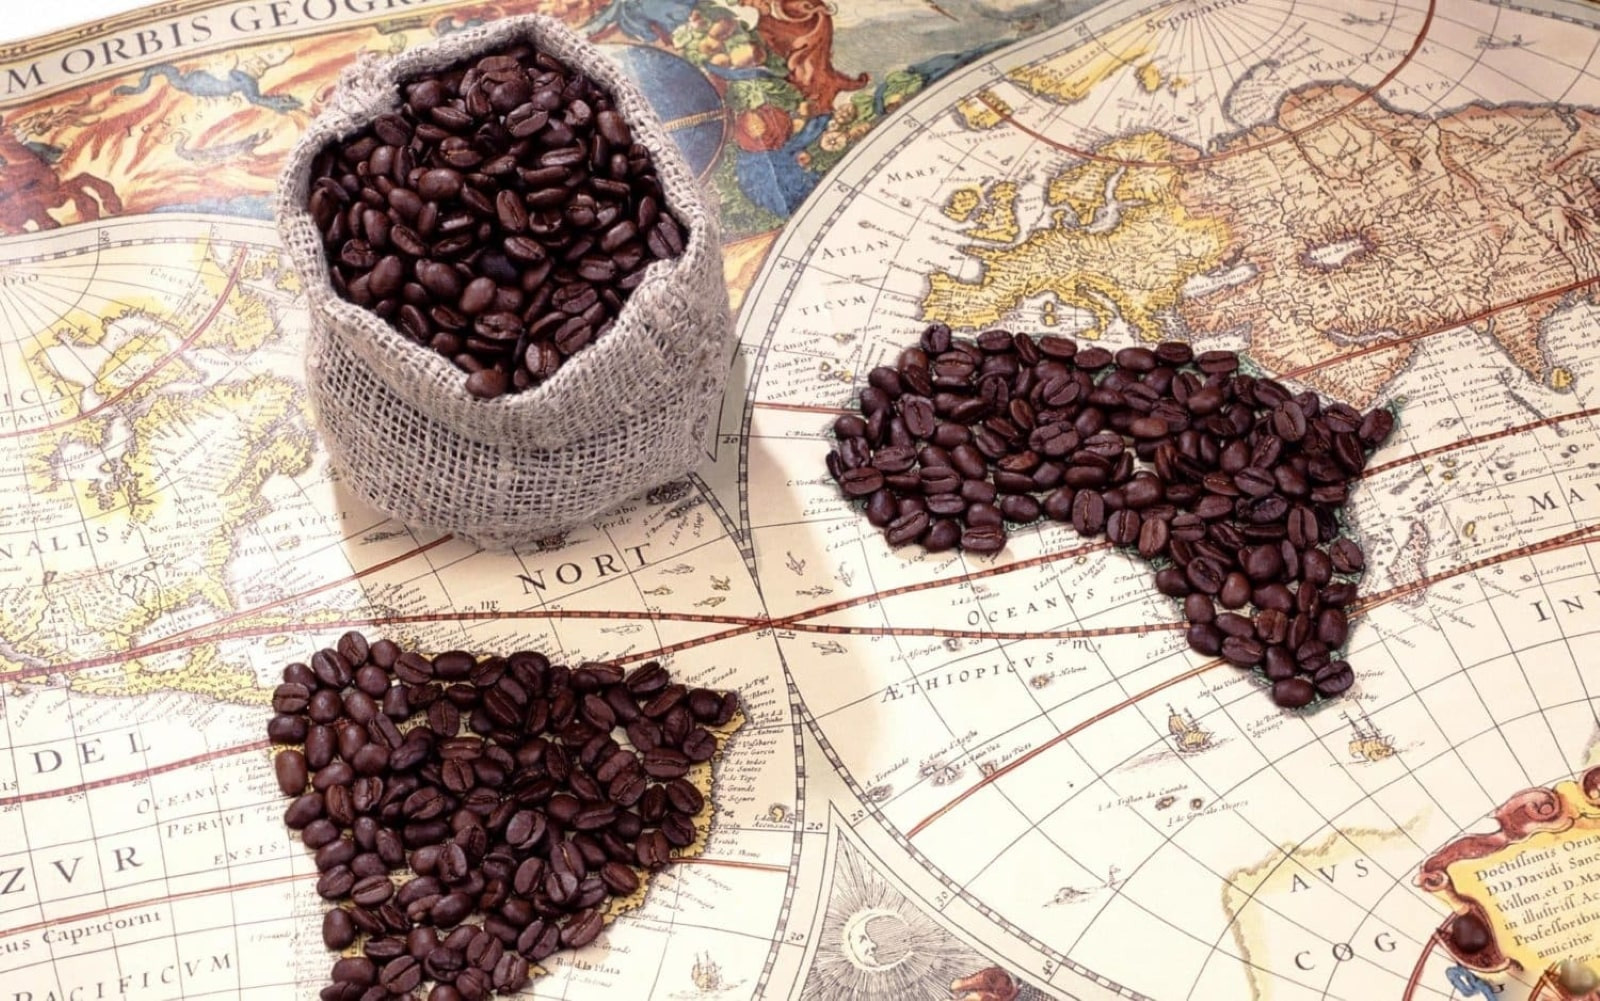 εικόνα σχετική με το άρθρο της magic bean για τις χώρες παραγωγής του καφέ